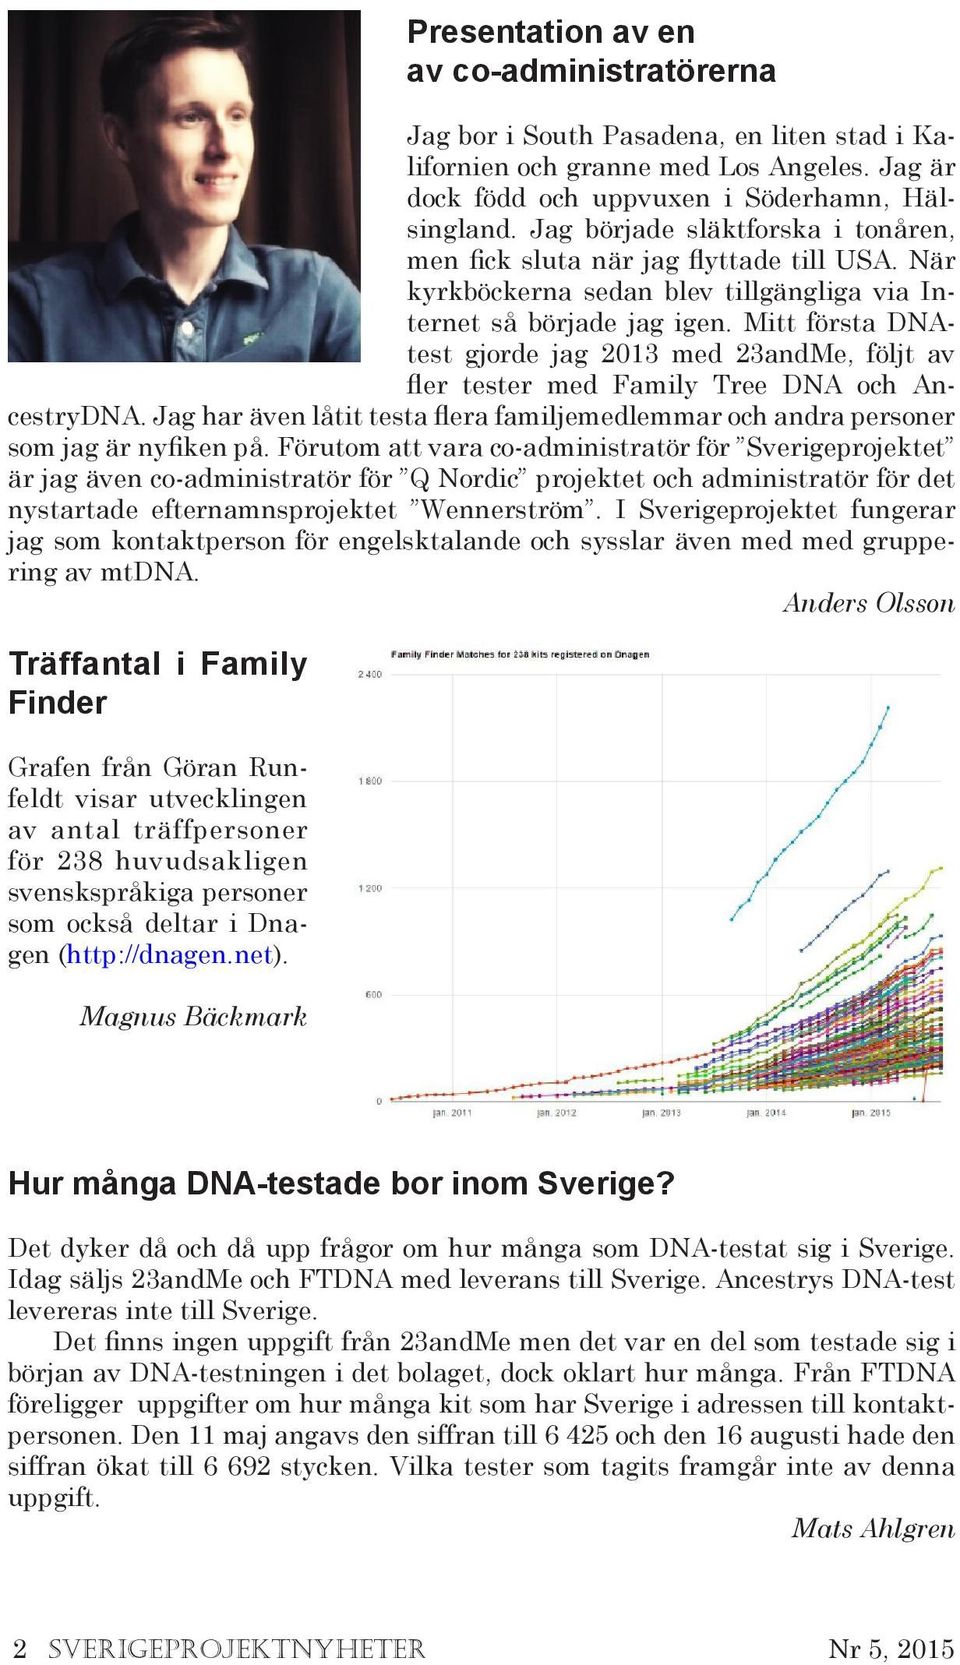 Mitt första DNAtest gjorde jag 2013 med 23andMe, följt av fler tester med Family Tree DNA och AncestryDNA. Jag har även låtit testa flera familjemedlemmar och andra personer som jag är nyfiken på.